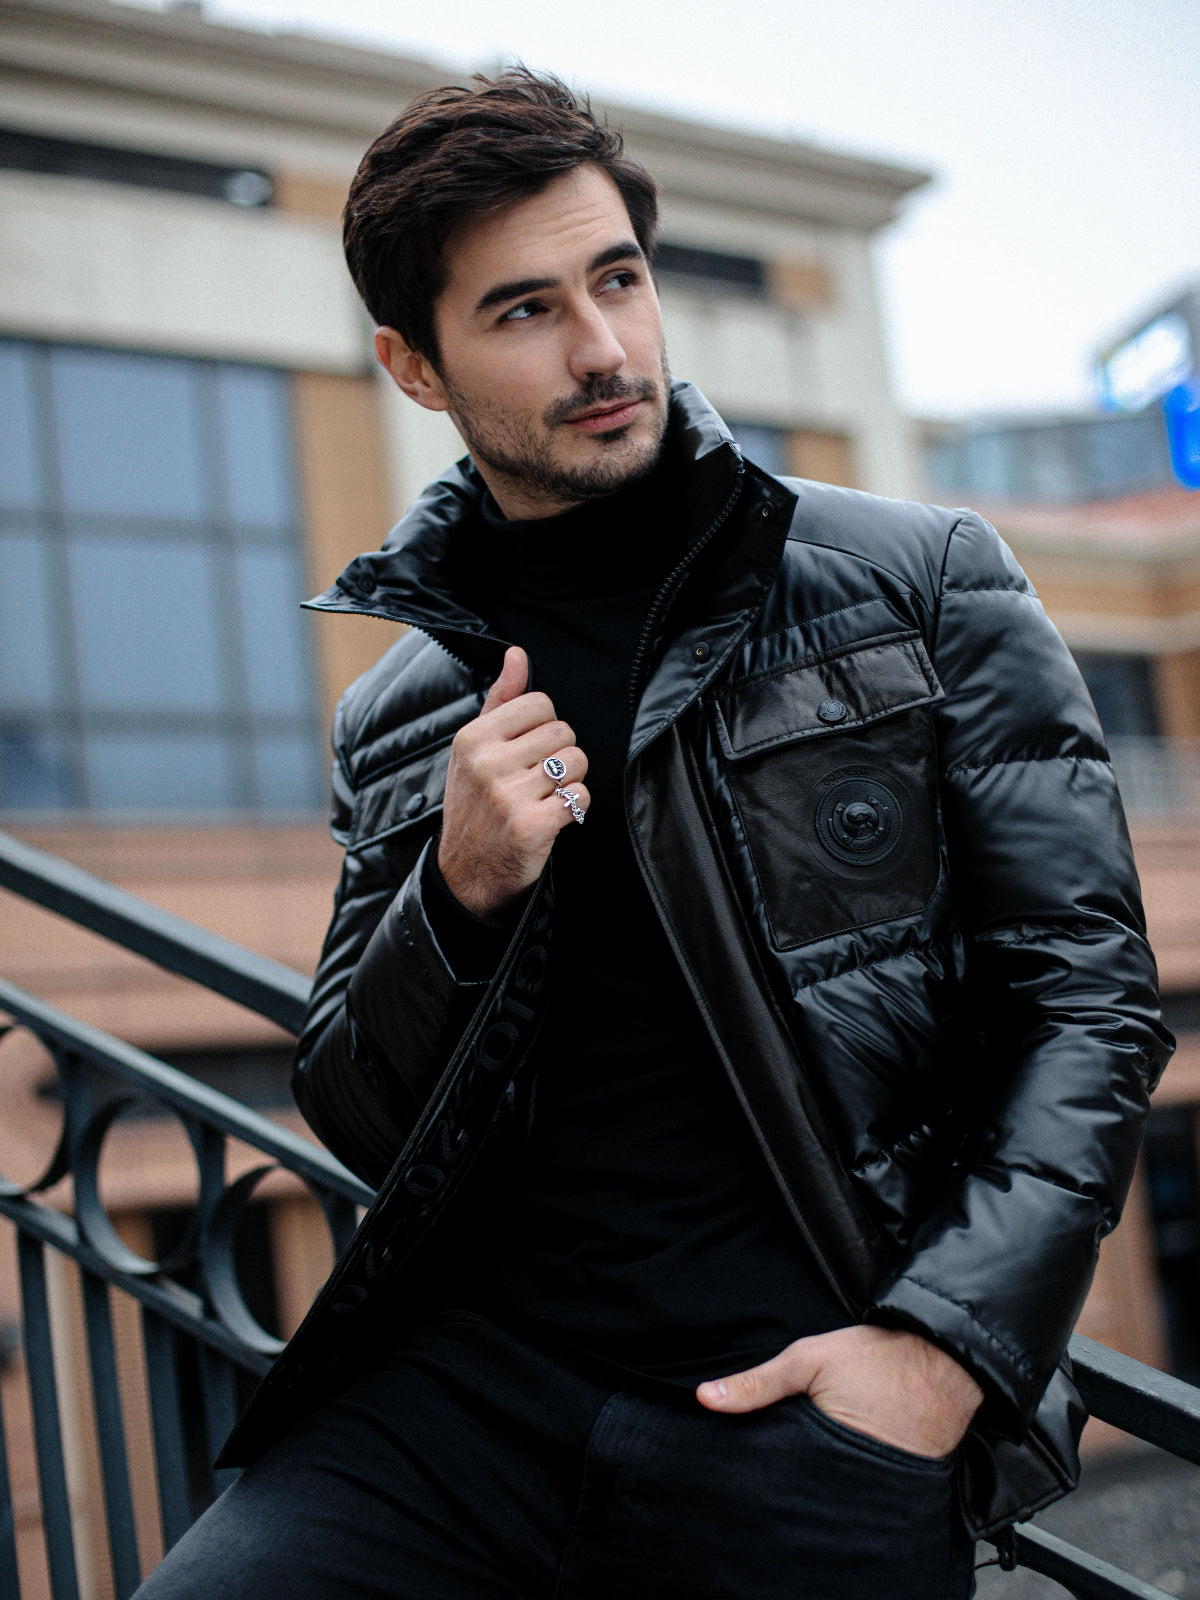 Veste Homme Imperméable Style Japonaise Jacket automne Hiver Super  Confort-Maron - Prix en Algérie